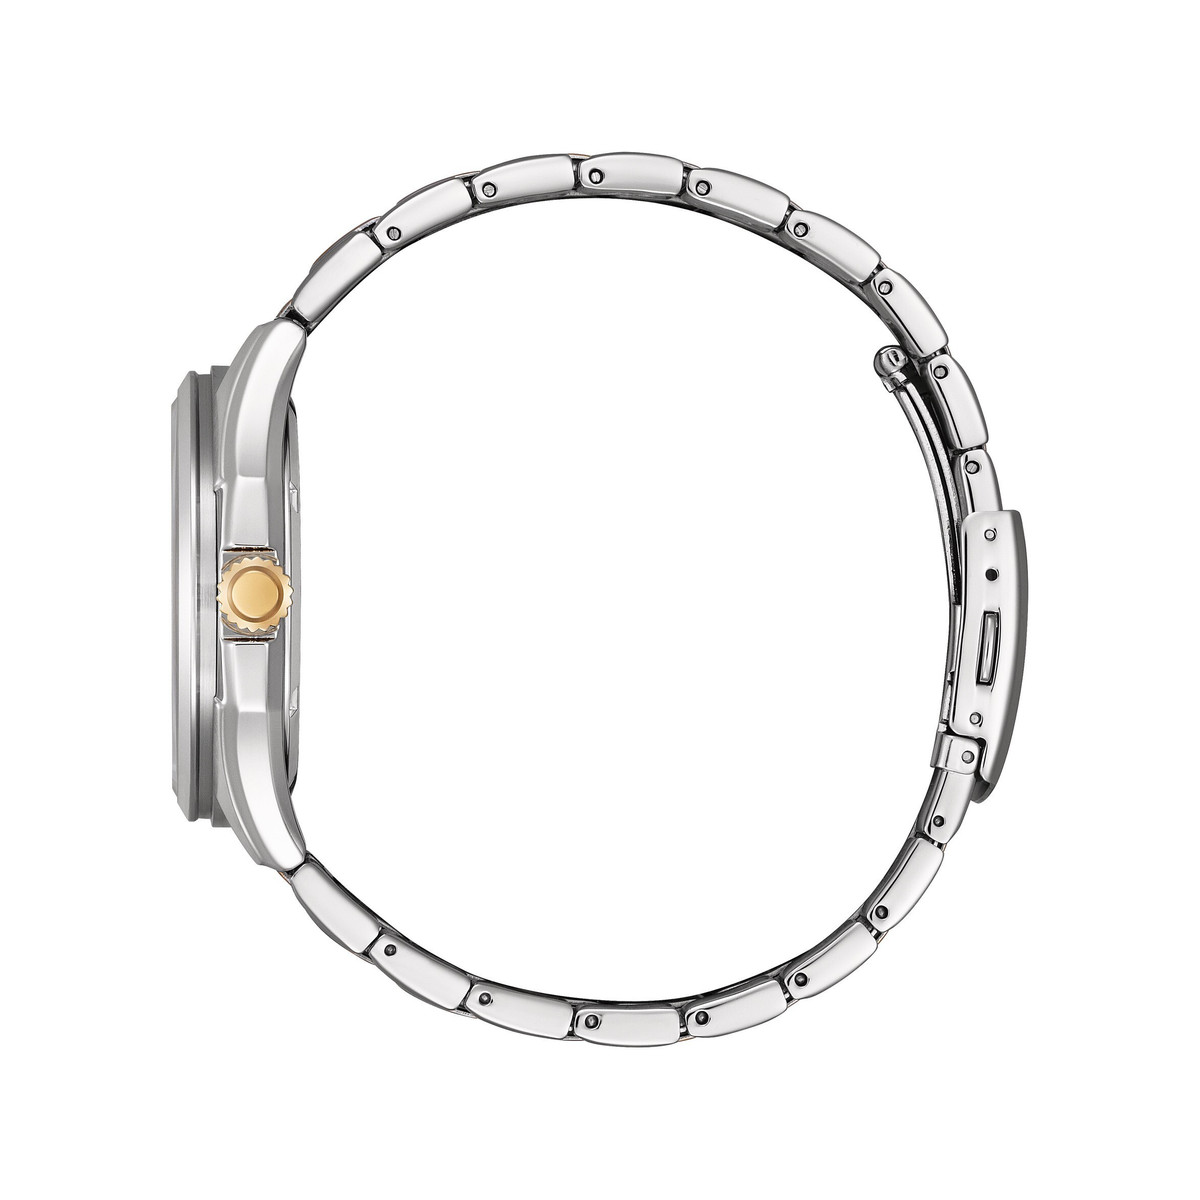 Montre CITIZEN platform classic homme eco-drive bracelet acier bicolore jaune - vue 2